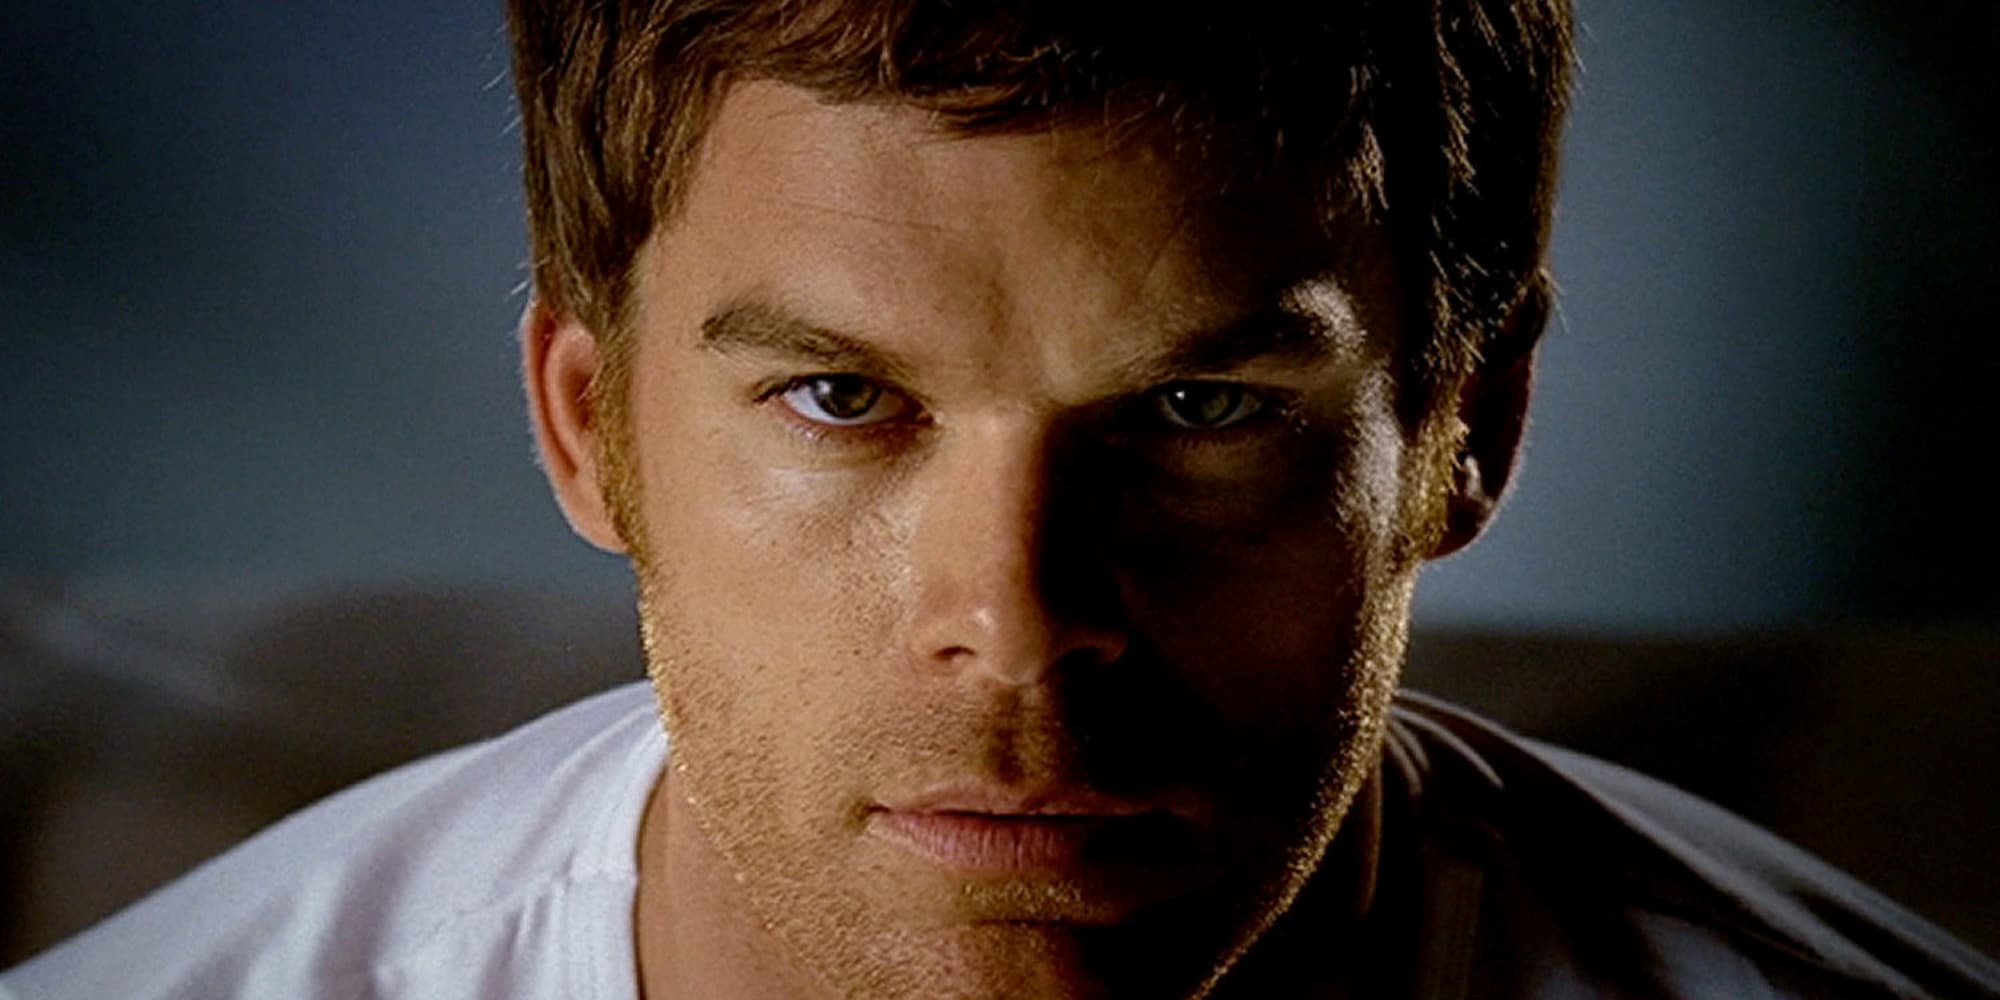 Dexter in season 1